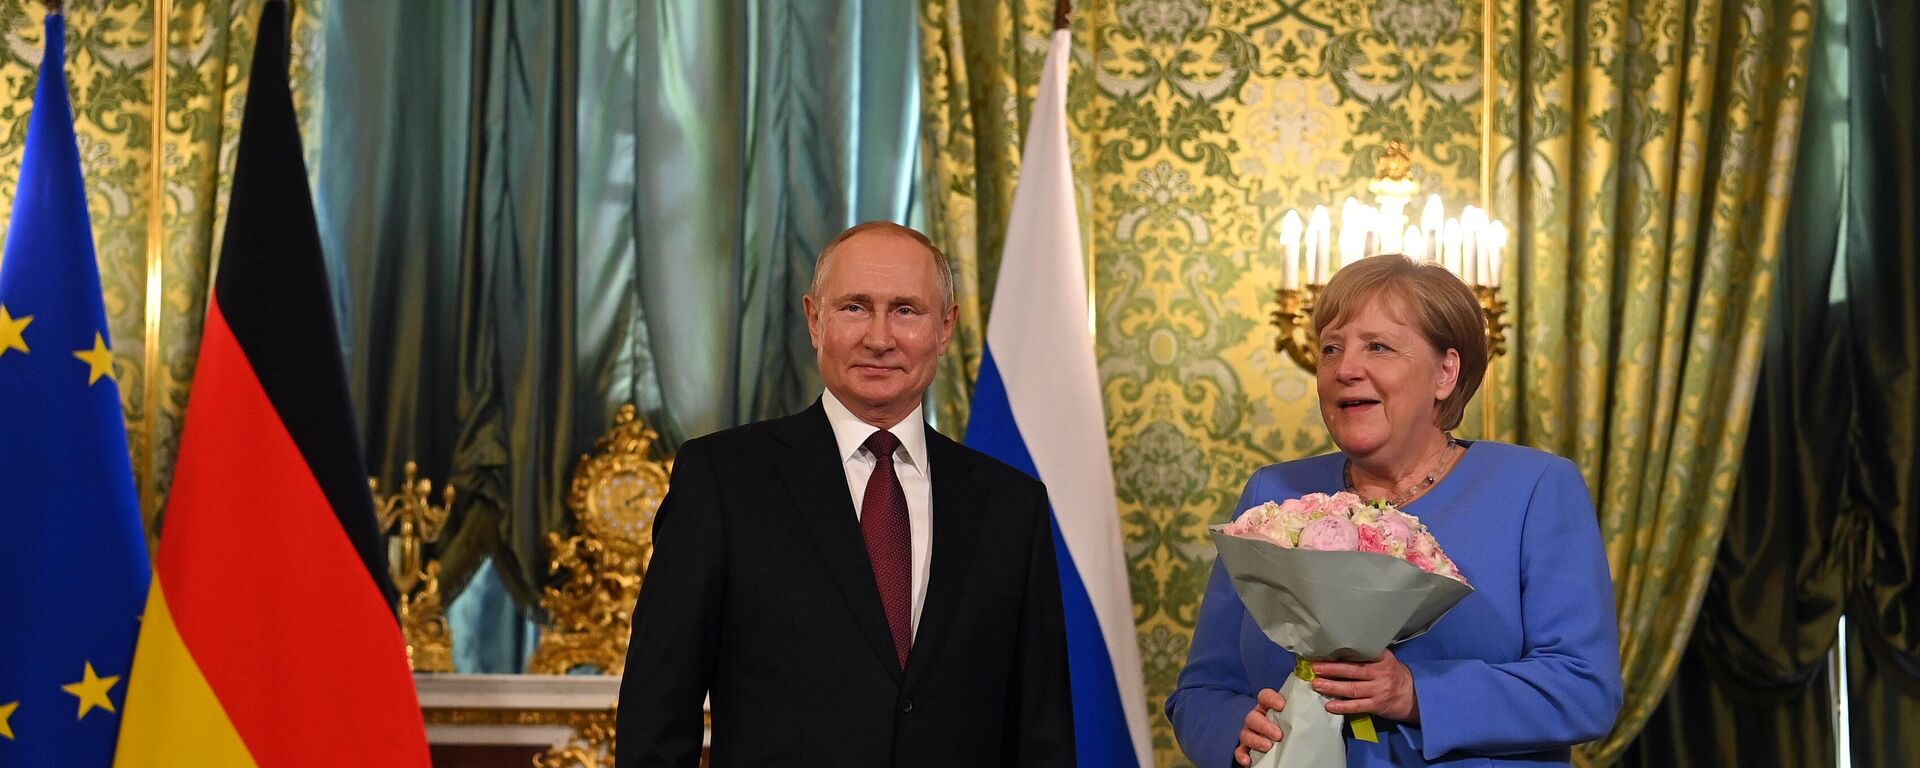 Angela merkel ir Vladimiras Putinas - Sputnik Lietuva, 1920, 21.08.2021